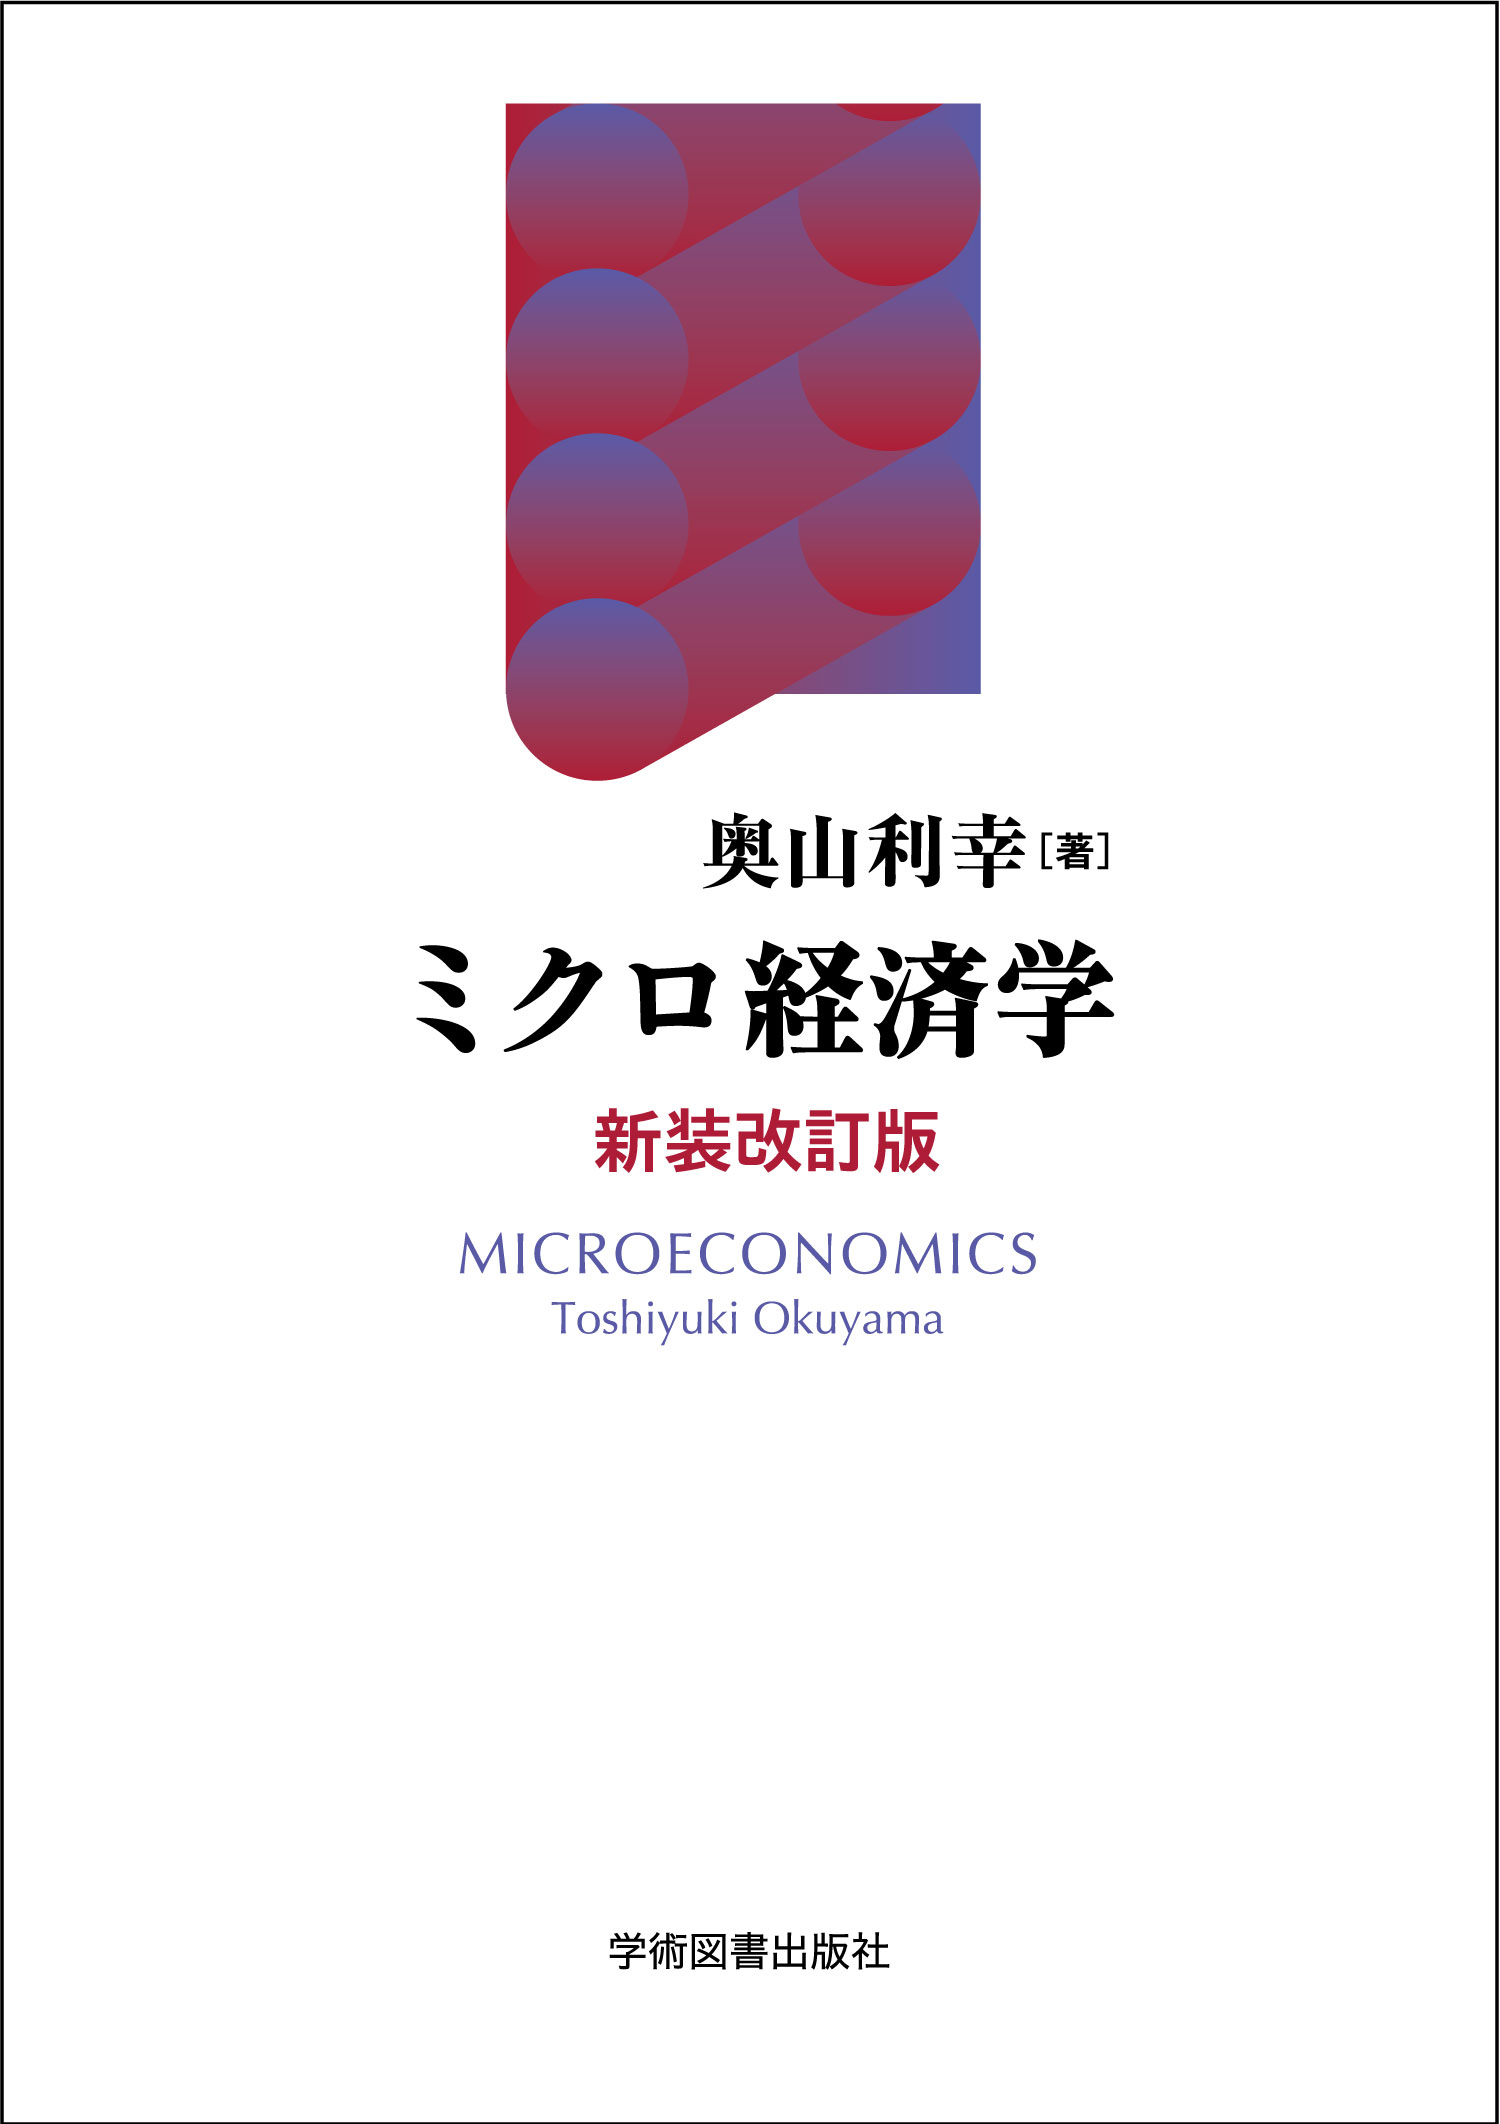 ミクロ経済学〈新装改訂版〉の商品画像